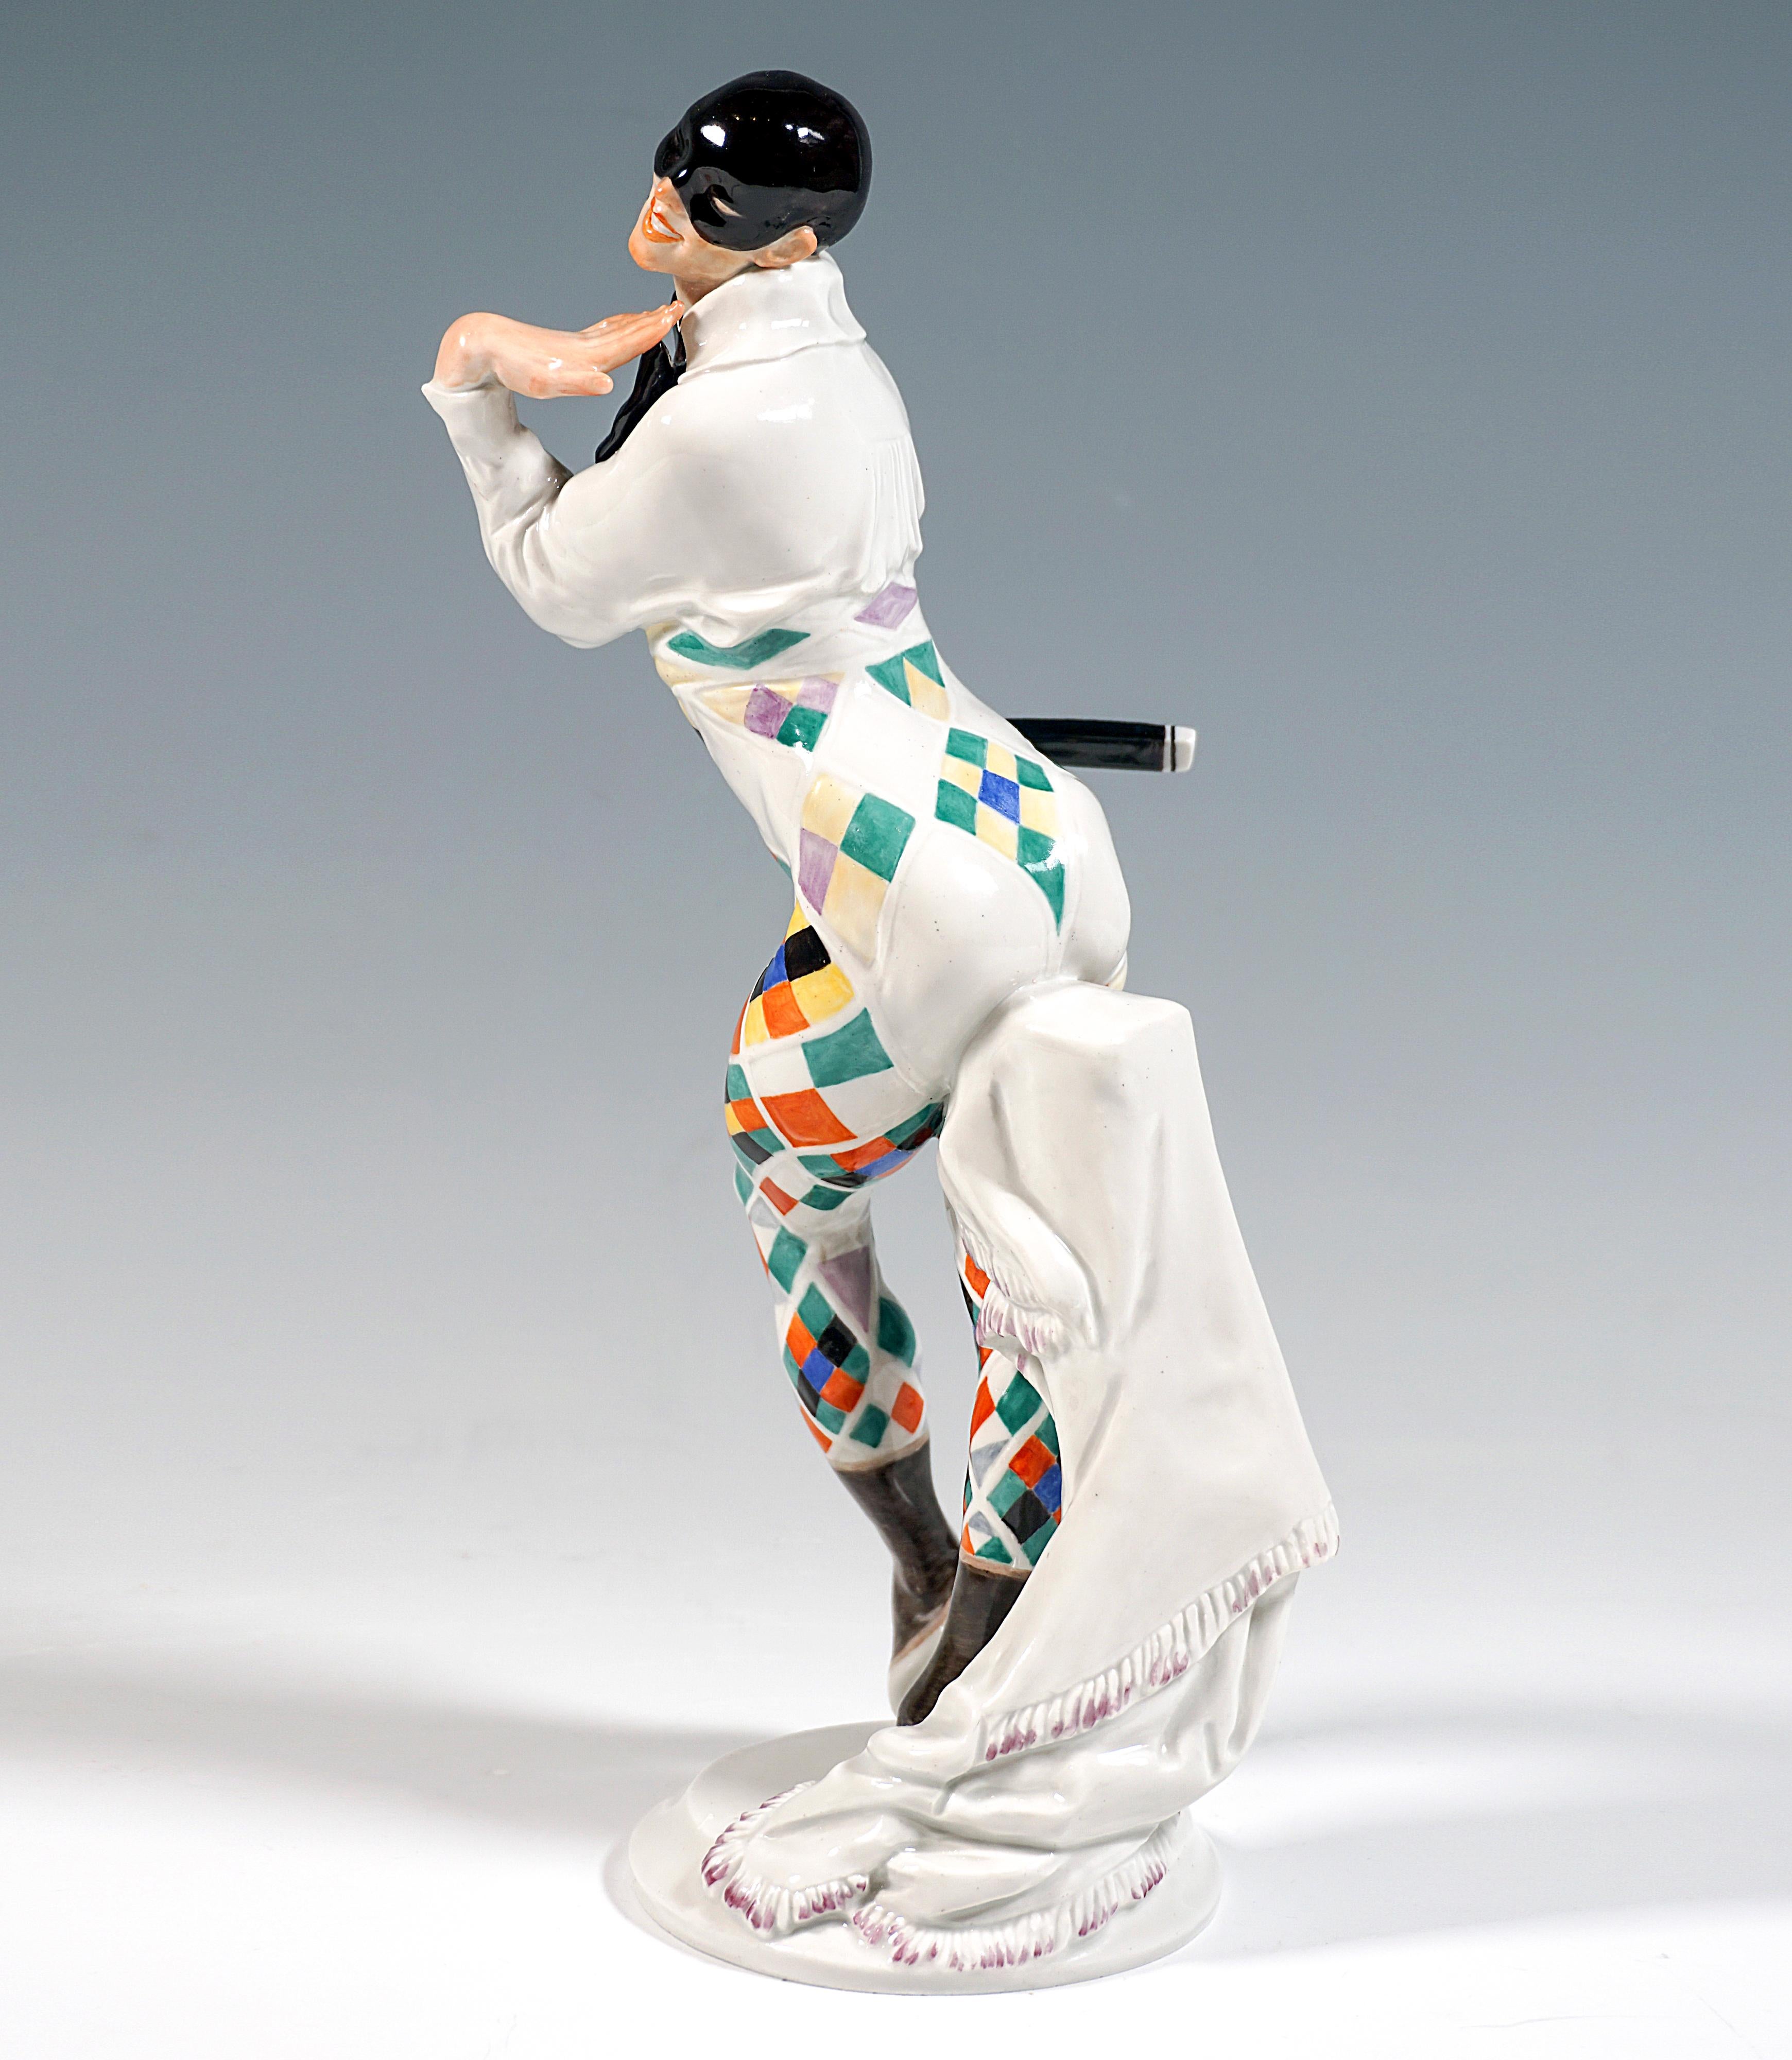 Figurine en porcelaine de Meissen :
Danseur posant, représentant Vaclav Nijinski en bajazzo (ou arlequin), le haut du corps légèrement penché vers l'avant, debout sur sa jambe droite, levant légèrement sa jambe gauche avec son pied étendu vers le